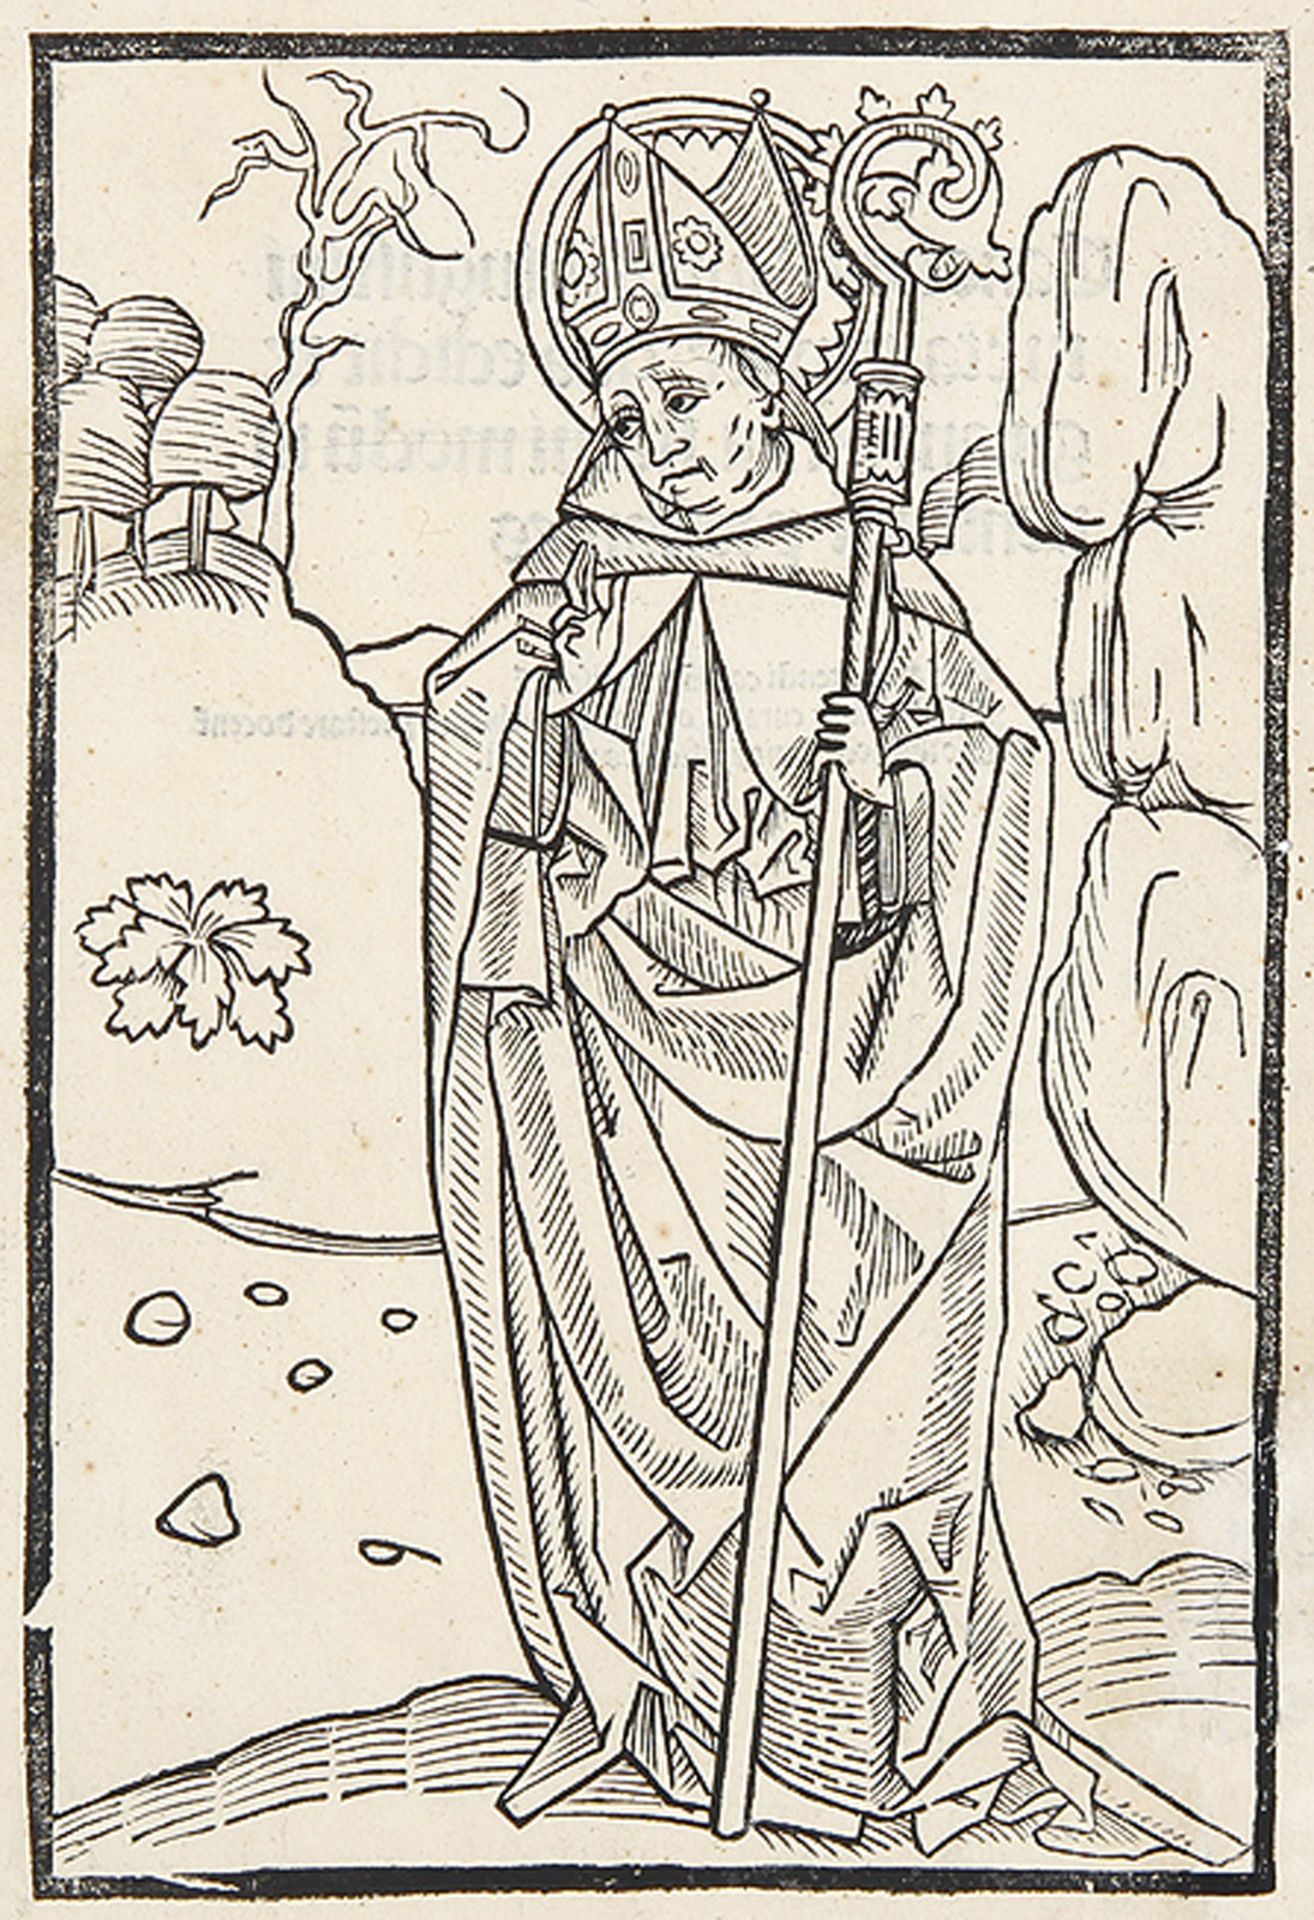 BUCHHOLZSCHNITTE: Augustinus von Hippo (Aurelius Augustinus) als Bischof.